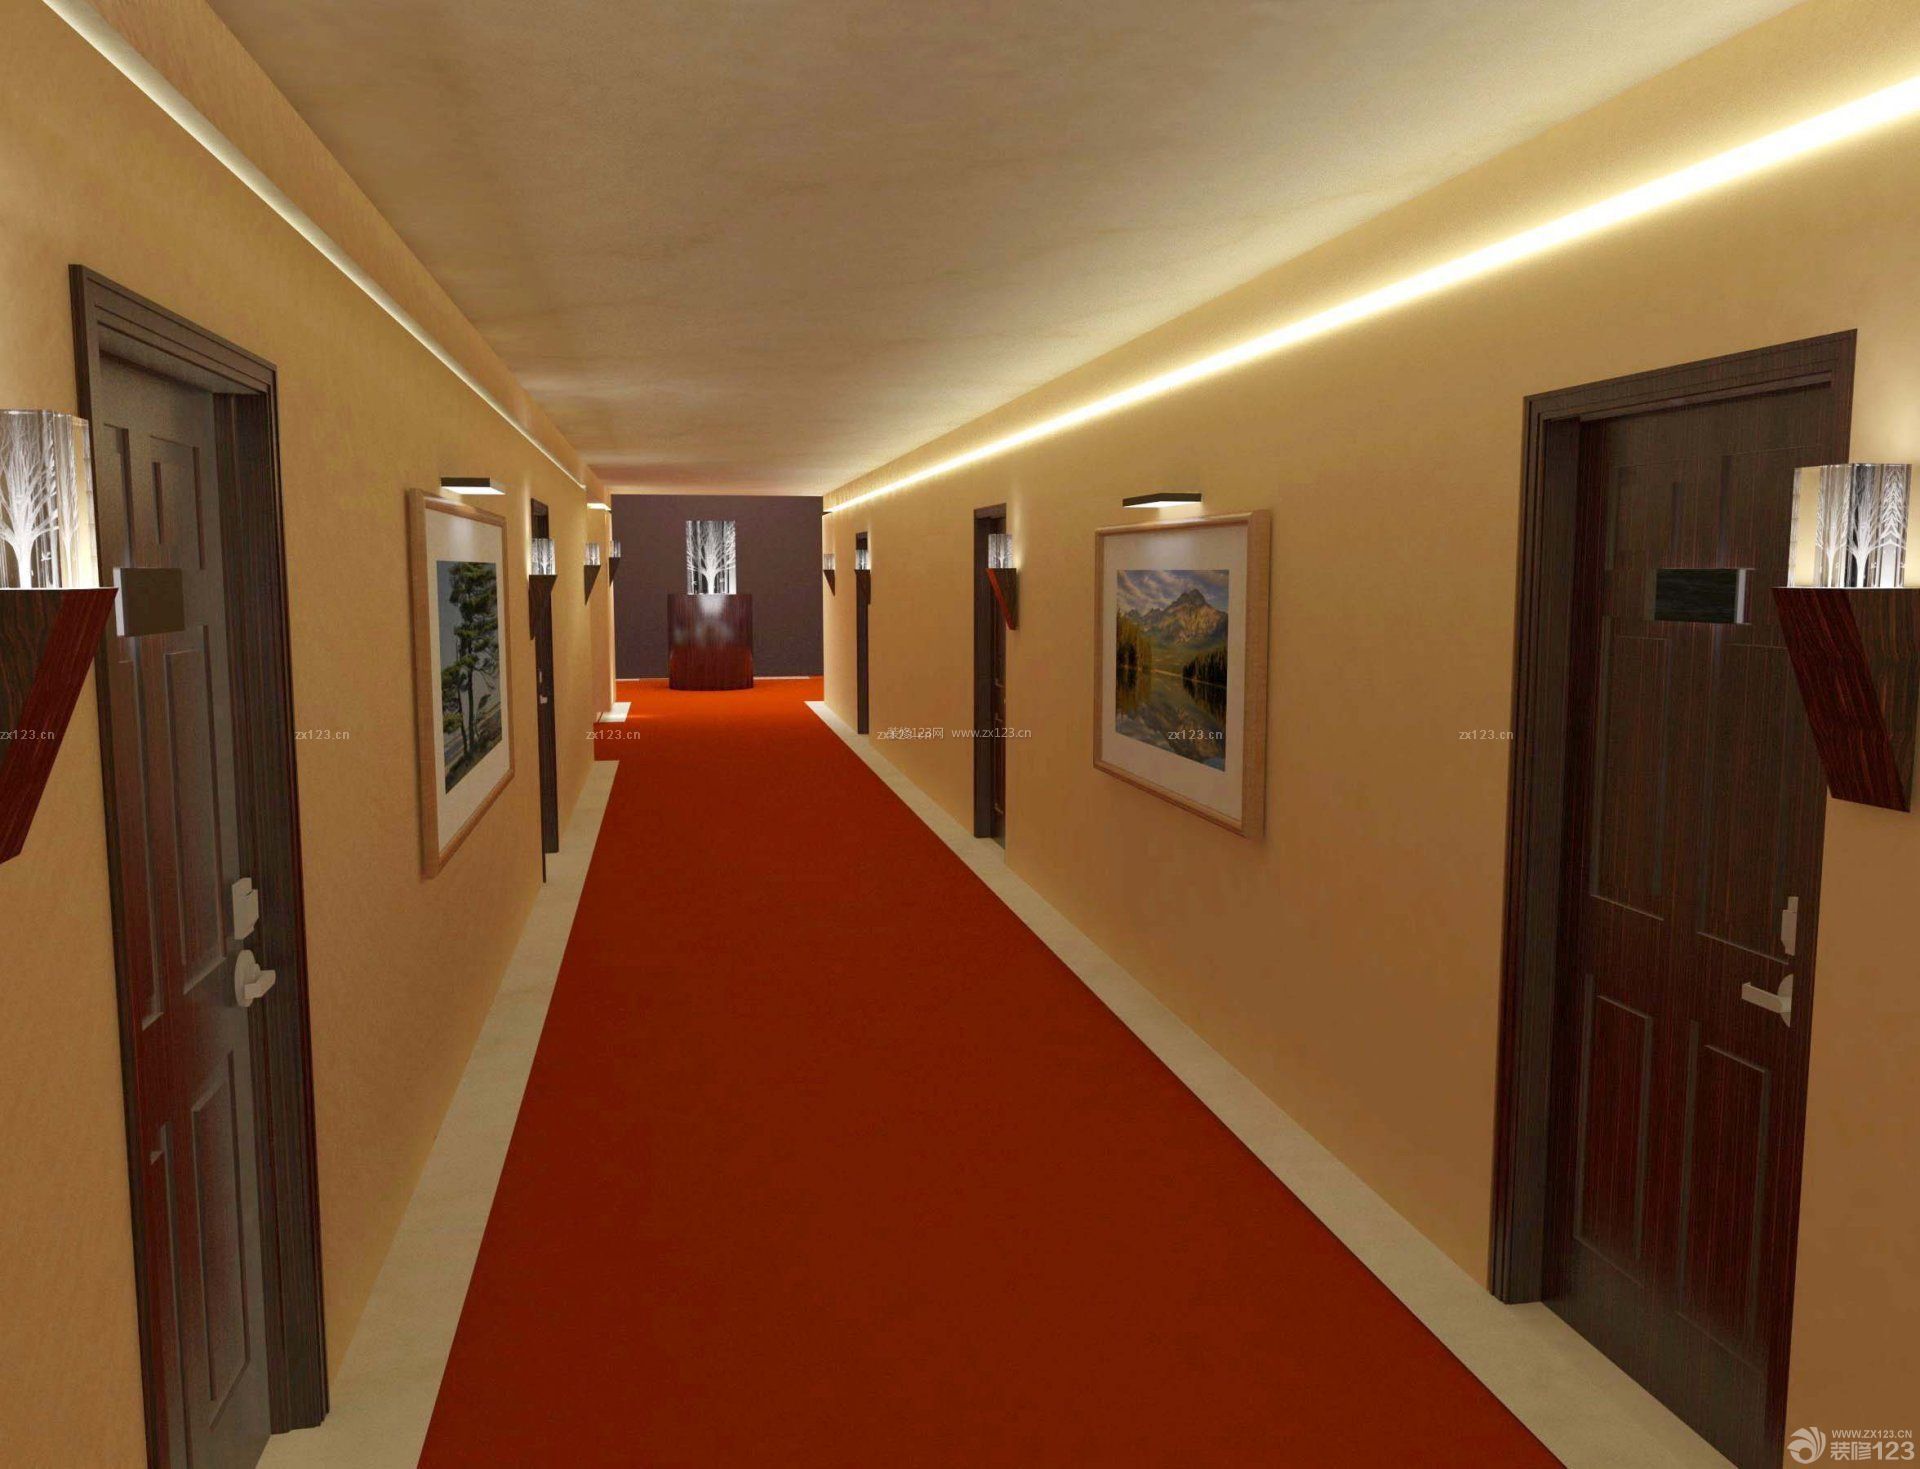 宾馆走廊红色地毯设计效果图片 